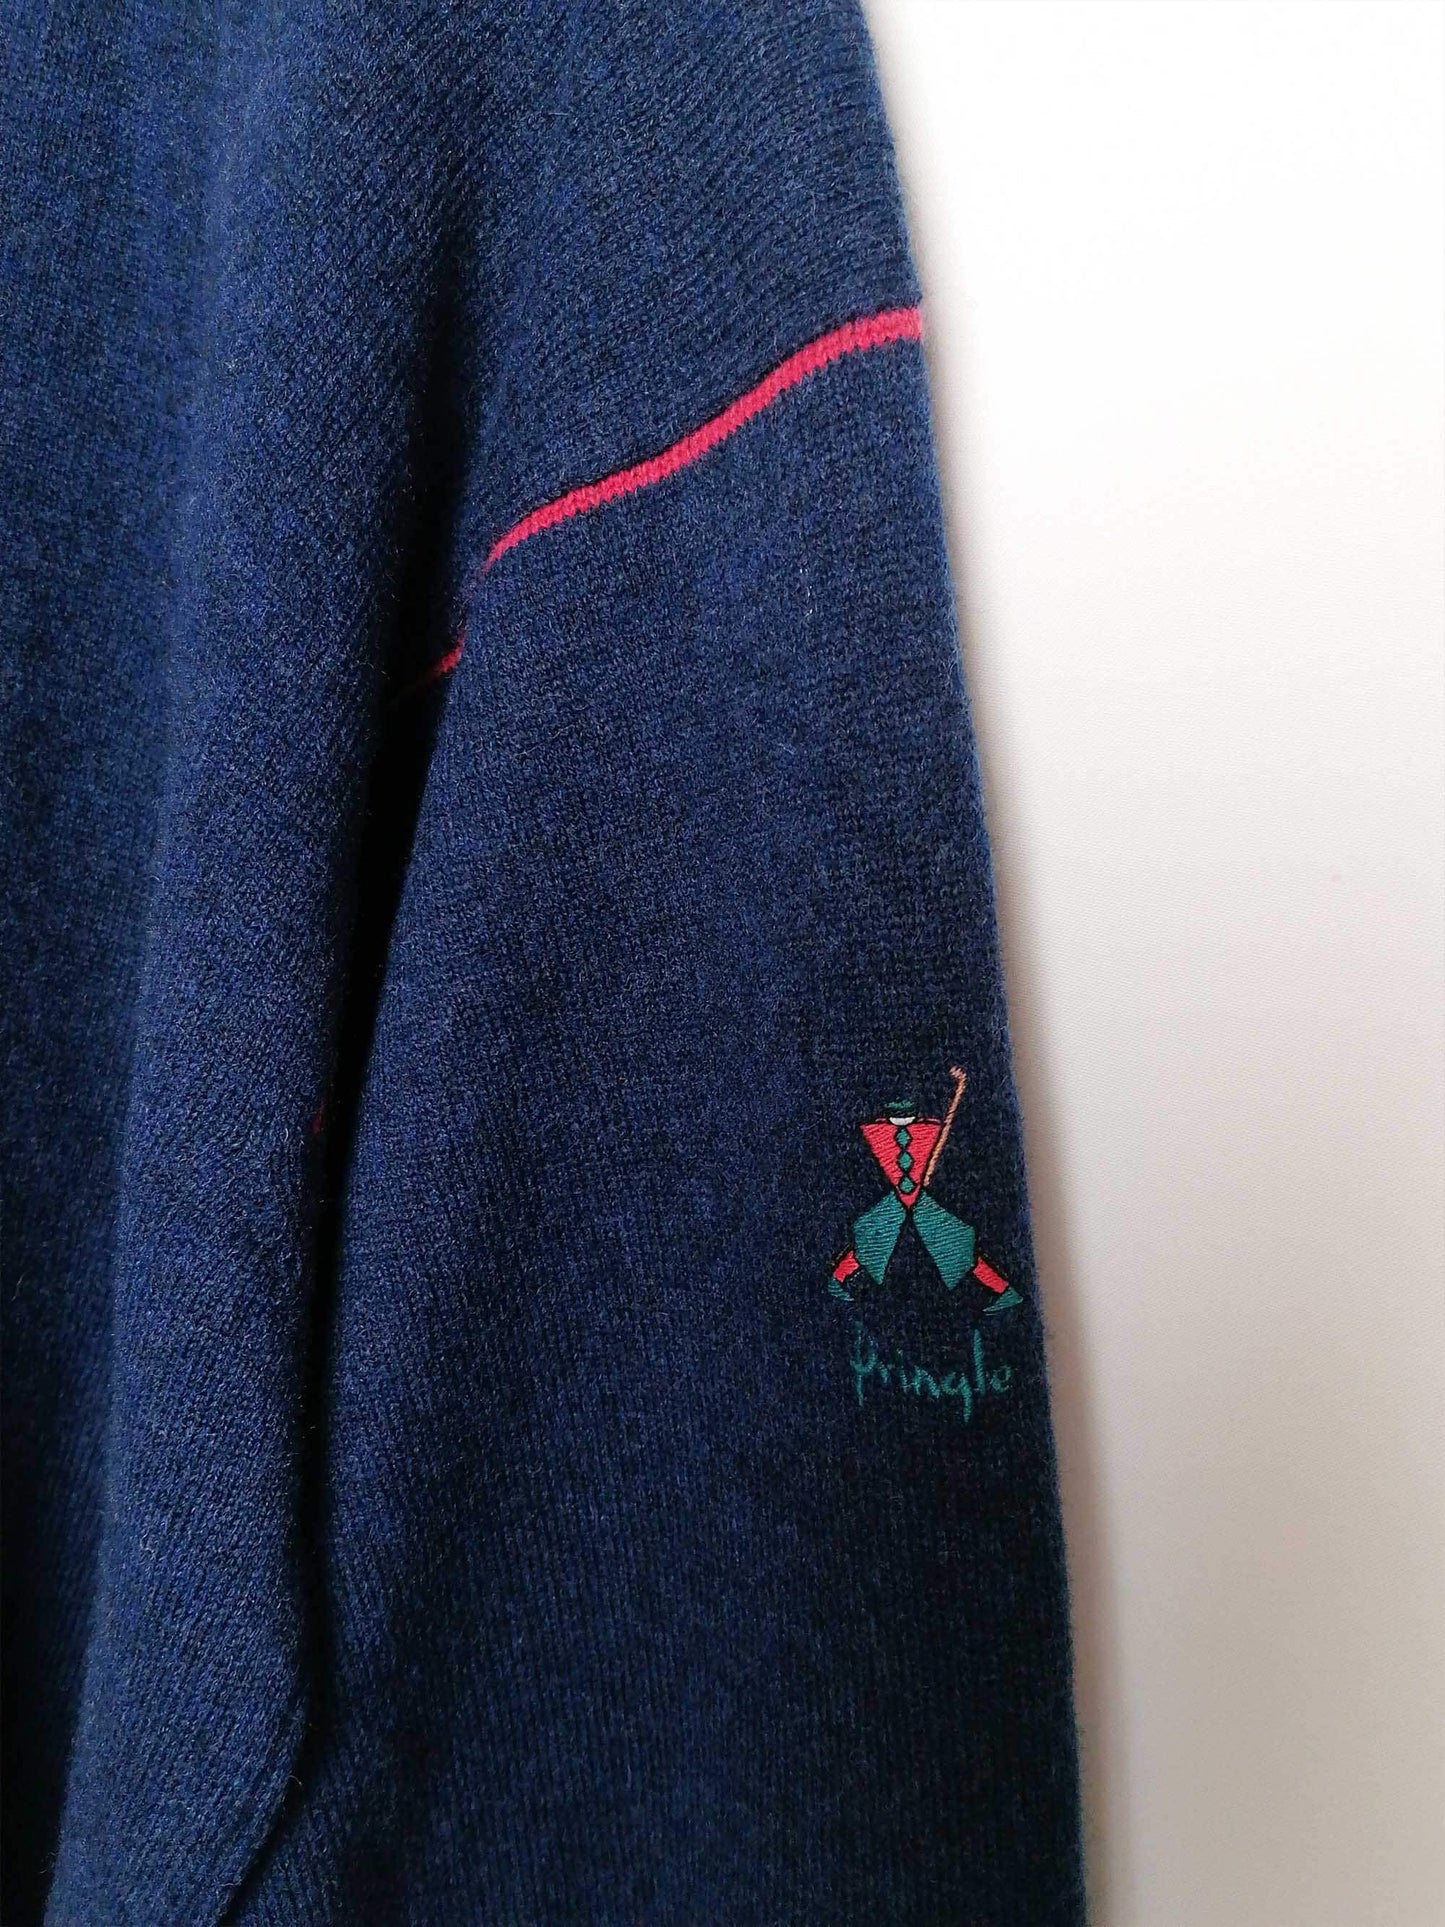 PRINGLE of SCOTLAND Novelty Sweater - size L